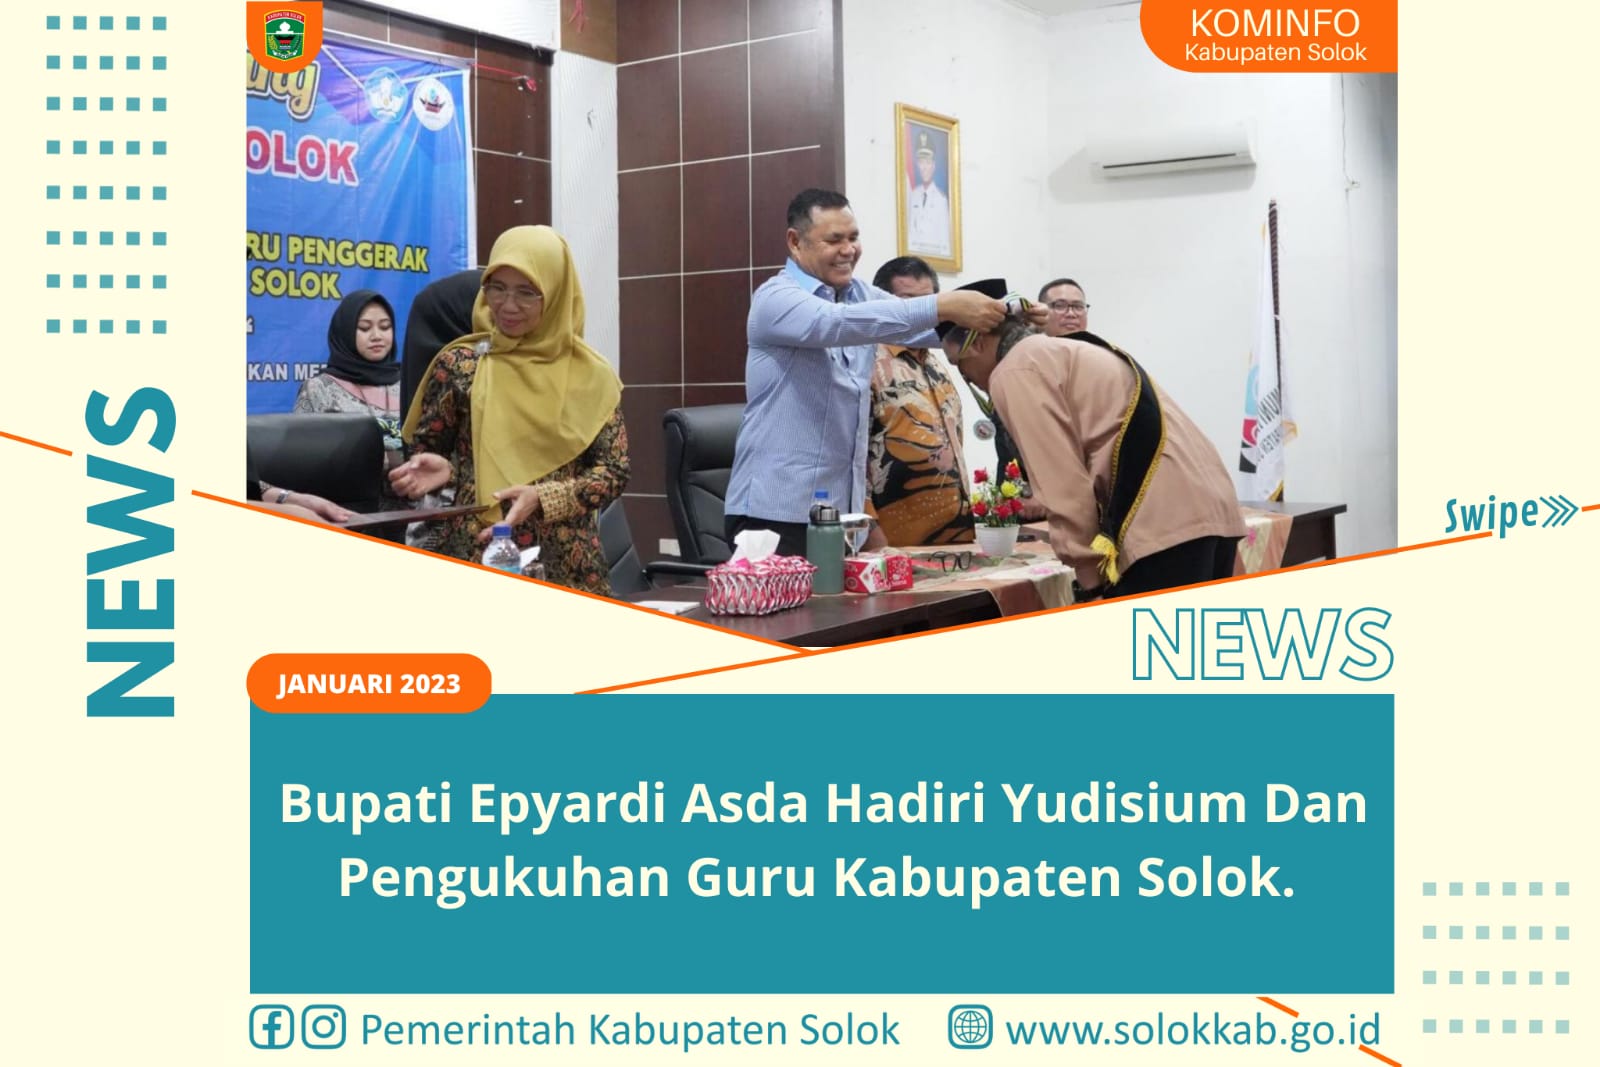 Bupati Epyardi Asda Hadiri Yudisium Dan Pengukuhan Guru Penggerak Kabupaten Solok. 